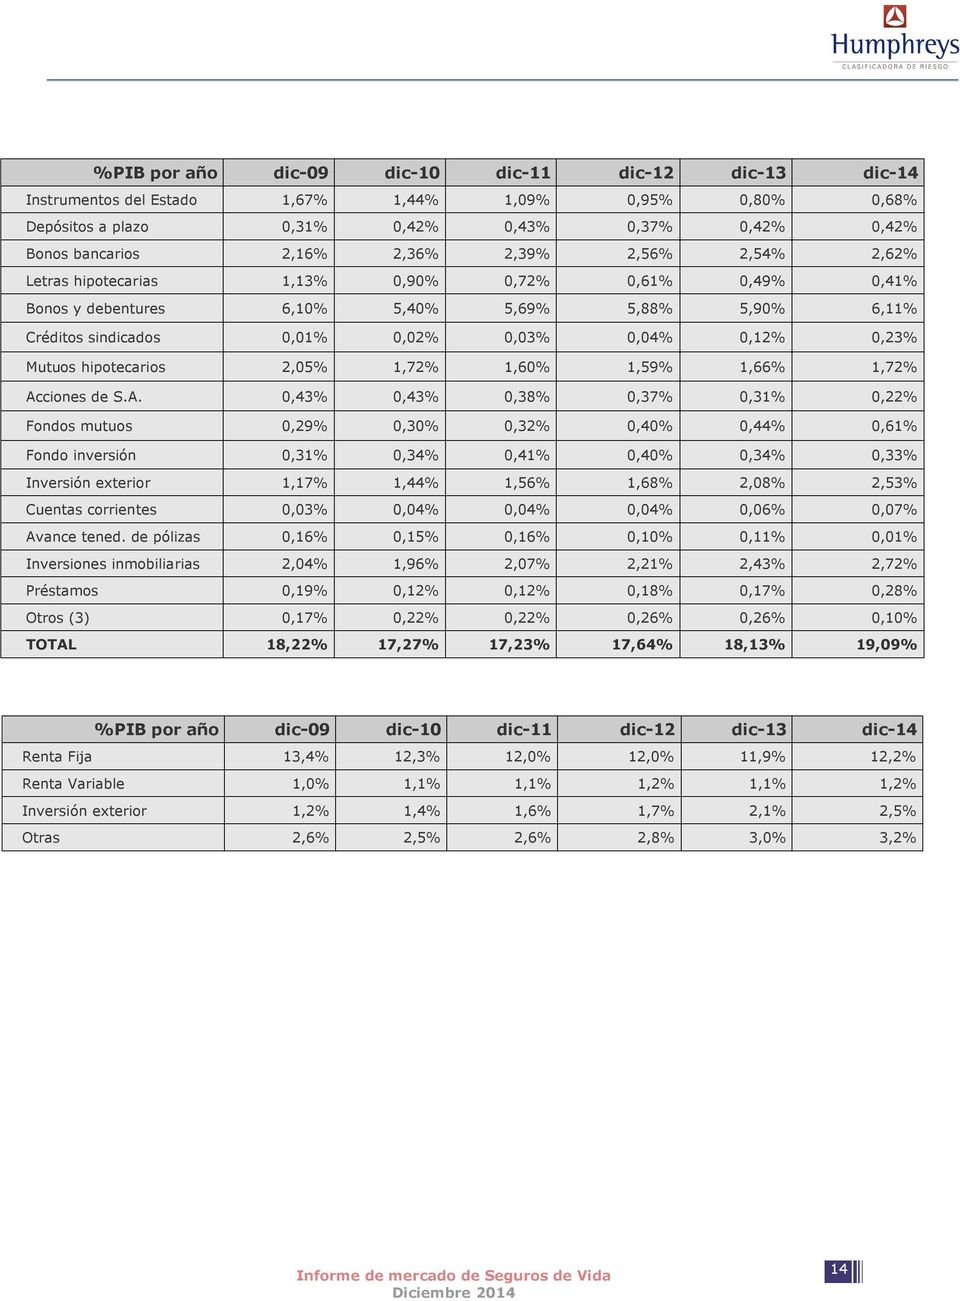 hipotecarios 2,05% 1,72% 1,60% 1,59% 1,66% 1,72% Ac